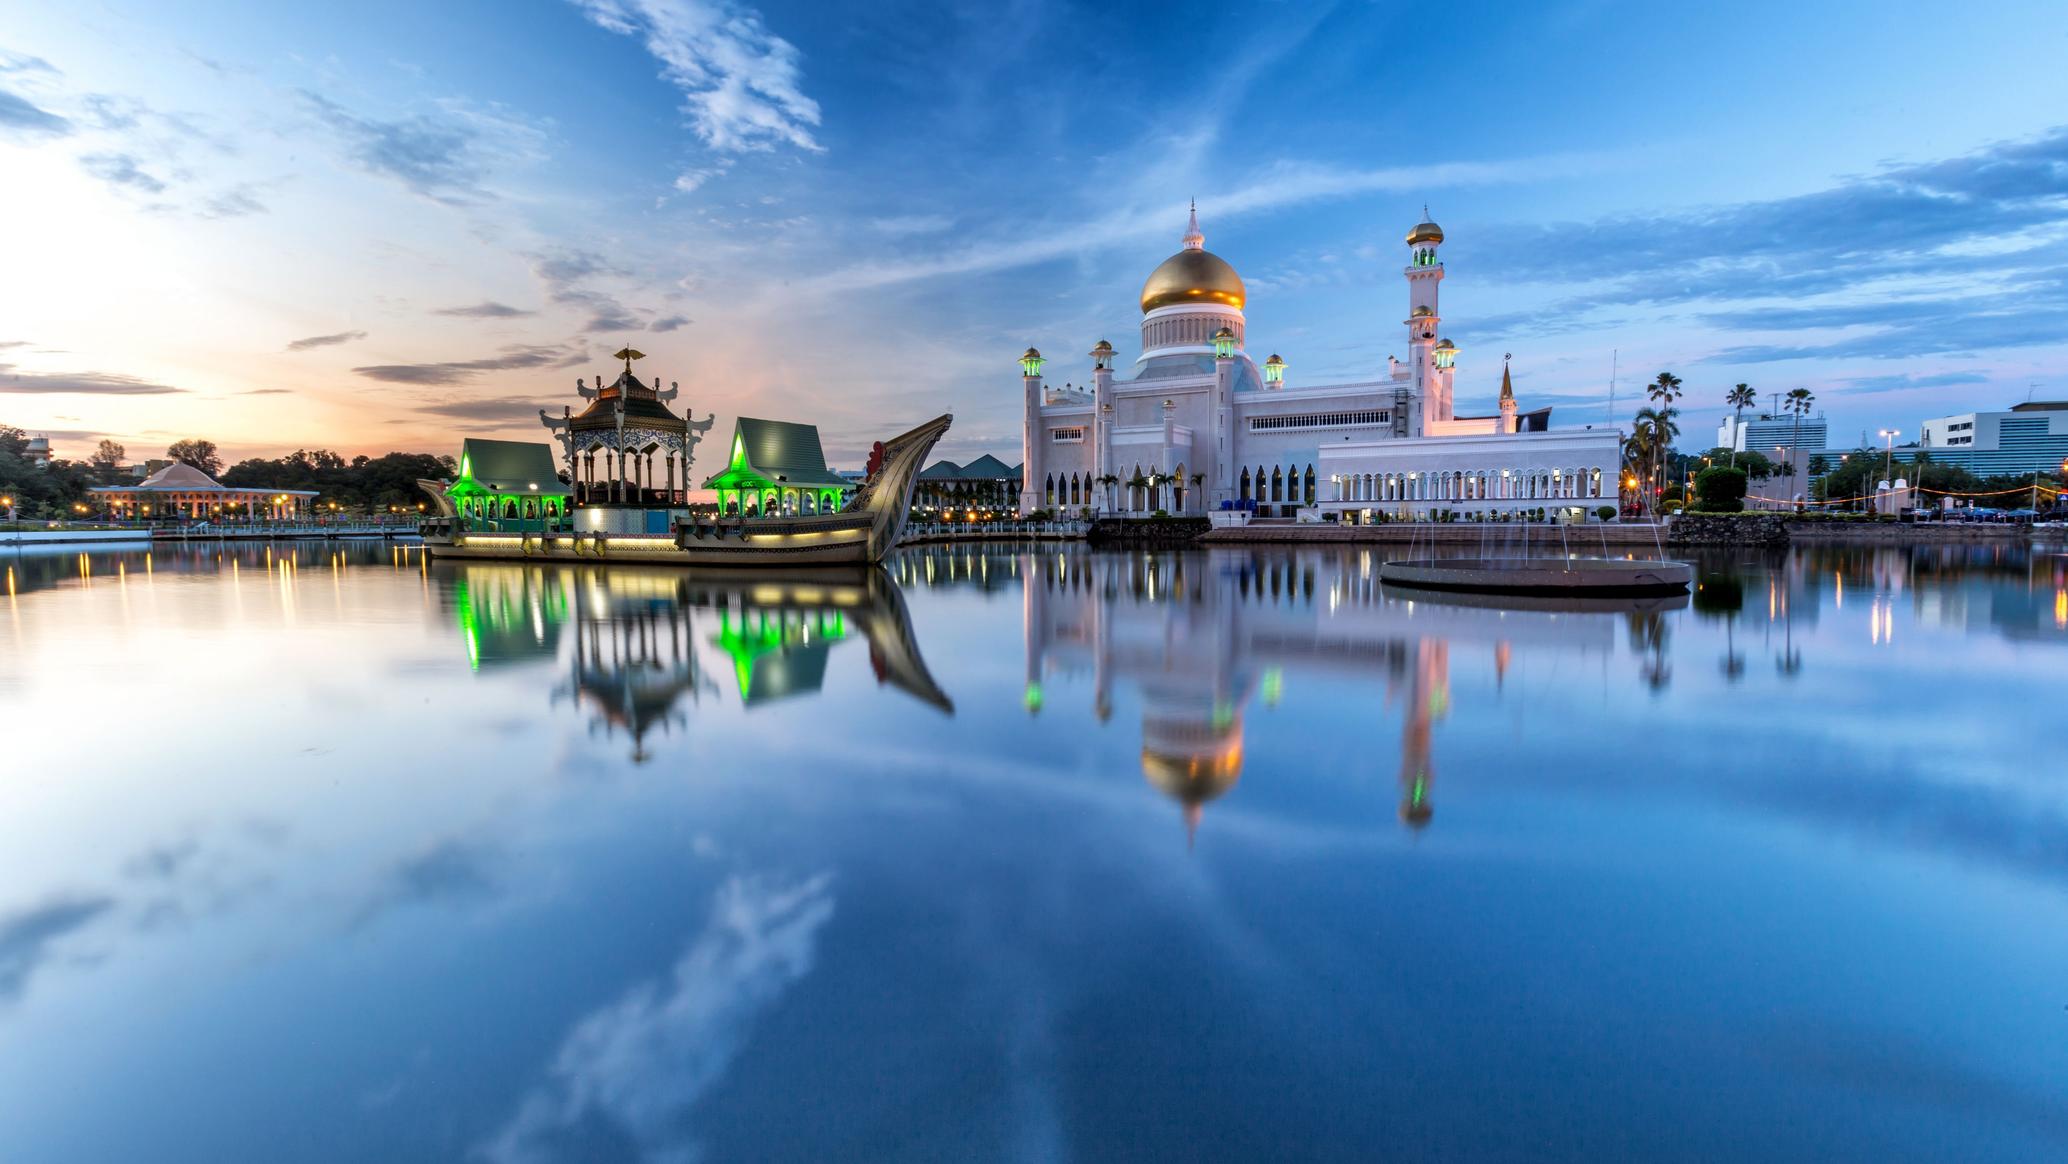 Vizesiz Gidilebilecek Asya Ülkeleri - Brunei